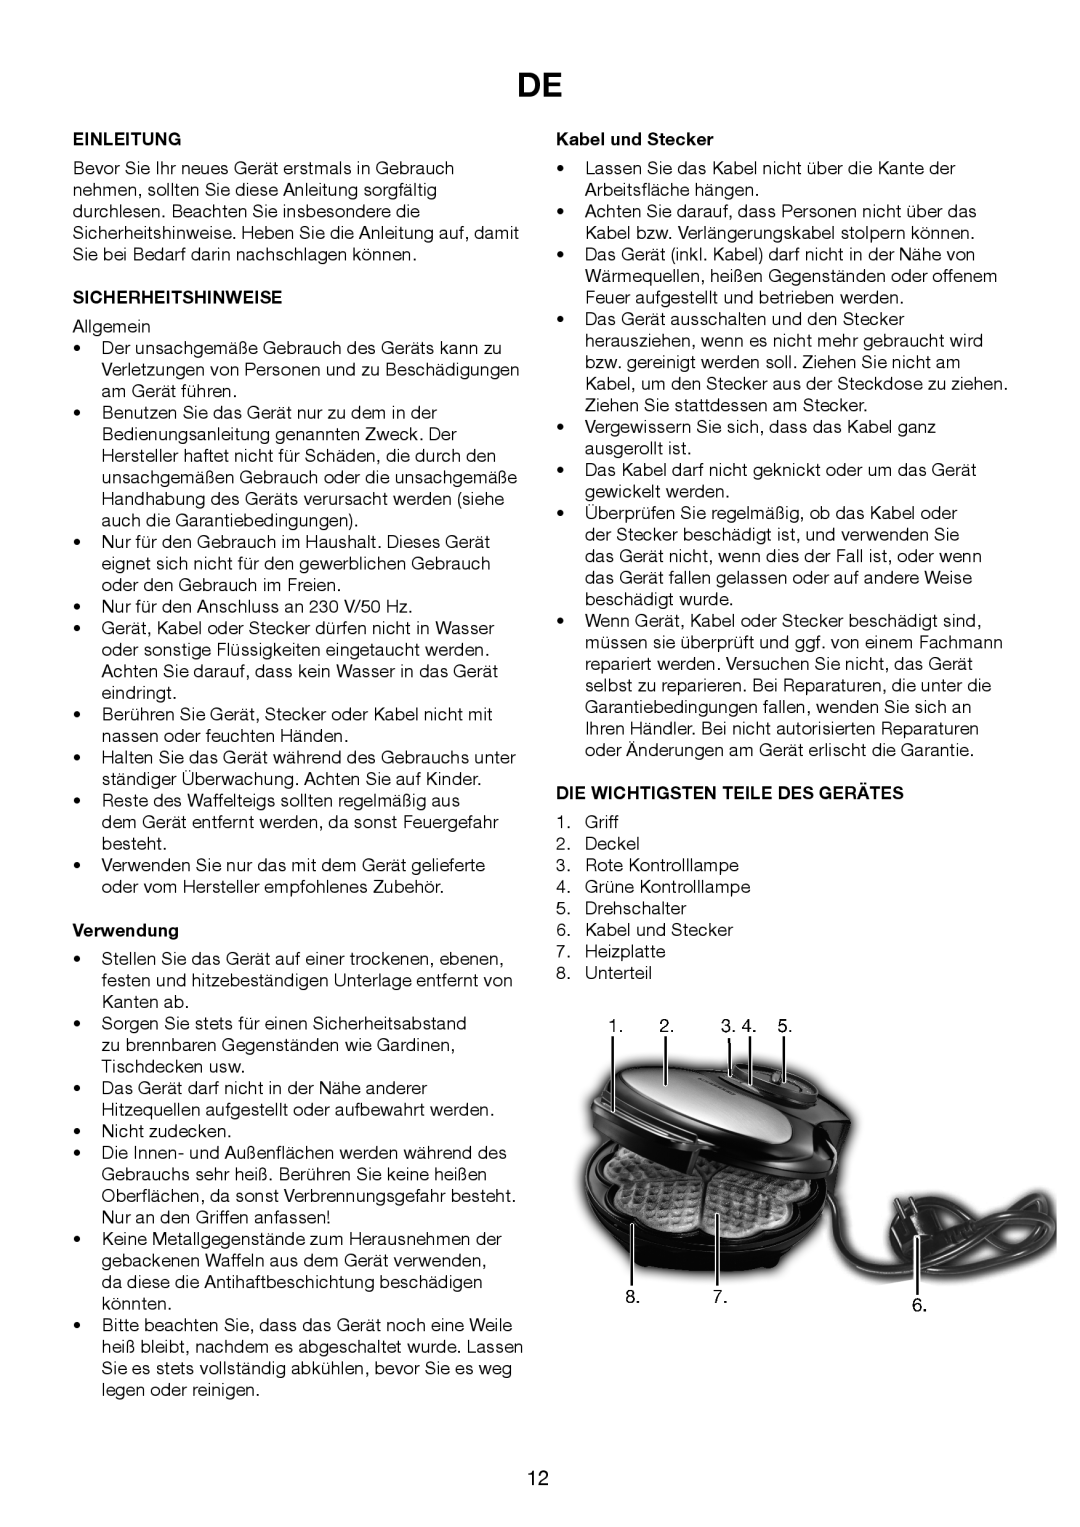 Melissa 643-194 manual Einleitung, Sicherheitshinweise, Verwendung, Kabel und Stecker, Die Wichtigsten Teile Des Gerätes 